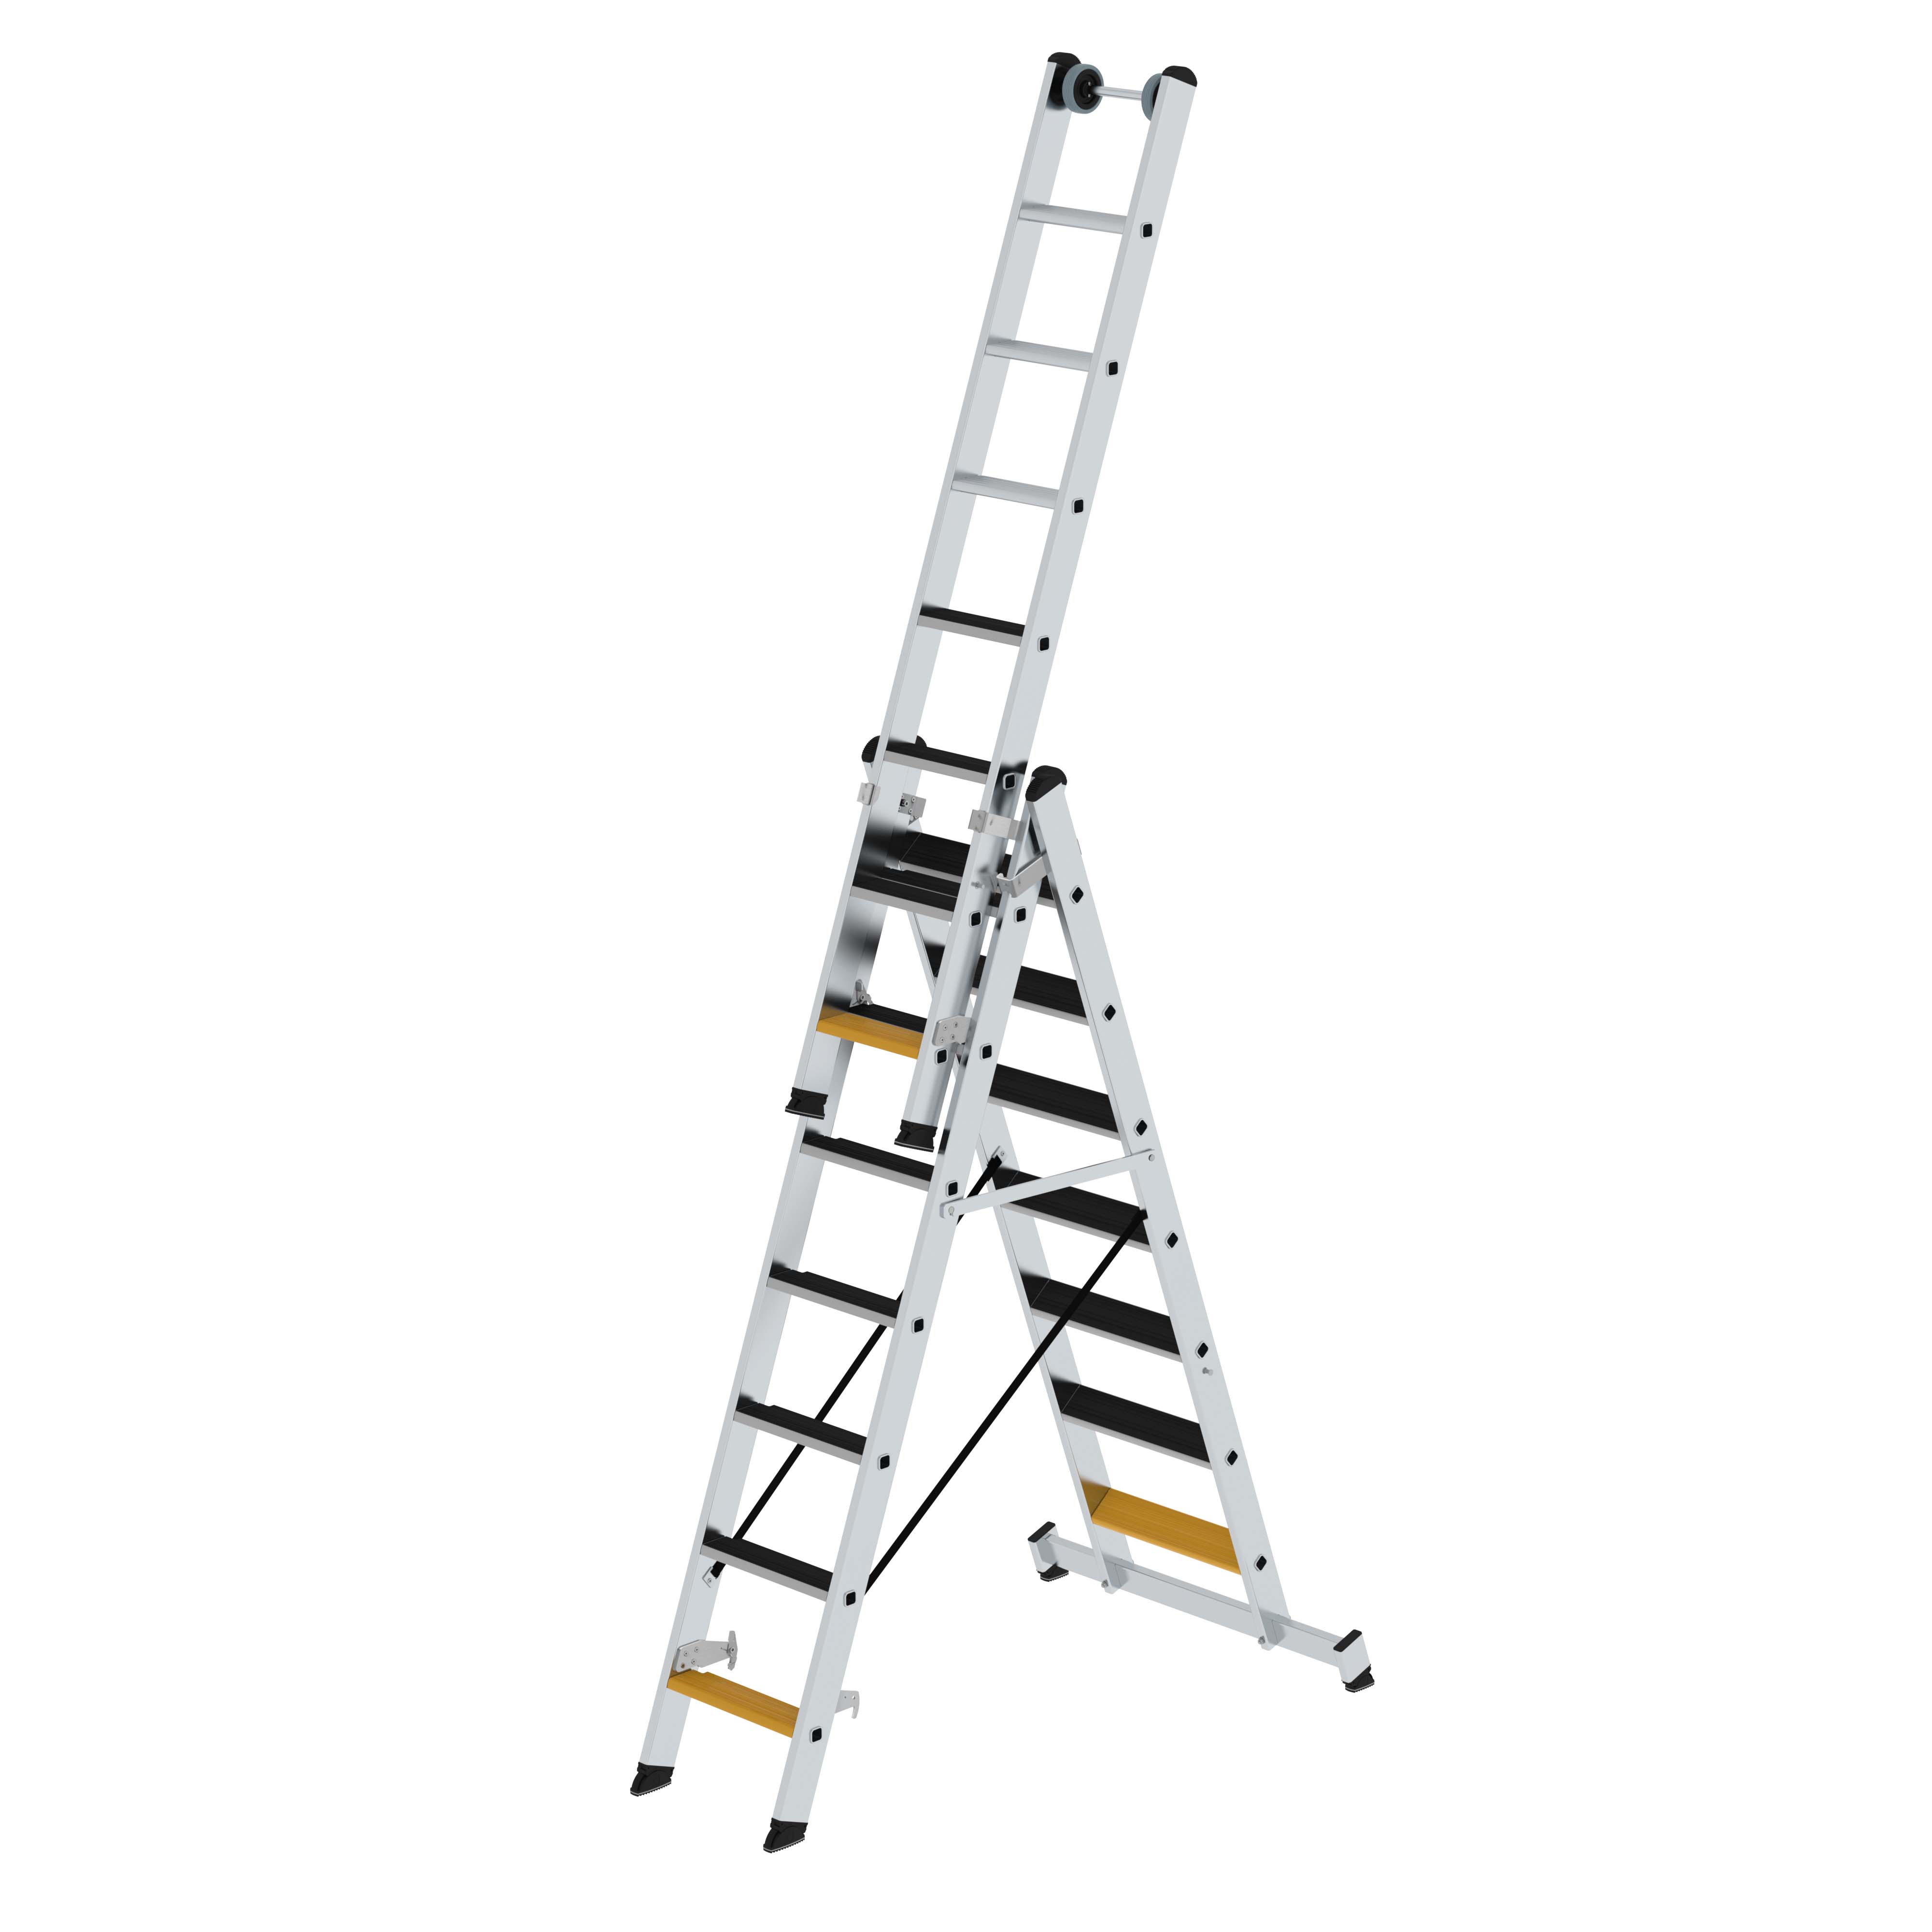 3 x 7 Stufen, Leiter aus Aluminium, 80 mm tiefe Stufen, einfache Höhenverstellung, Steh-, Anlege- und Schiebeleiter